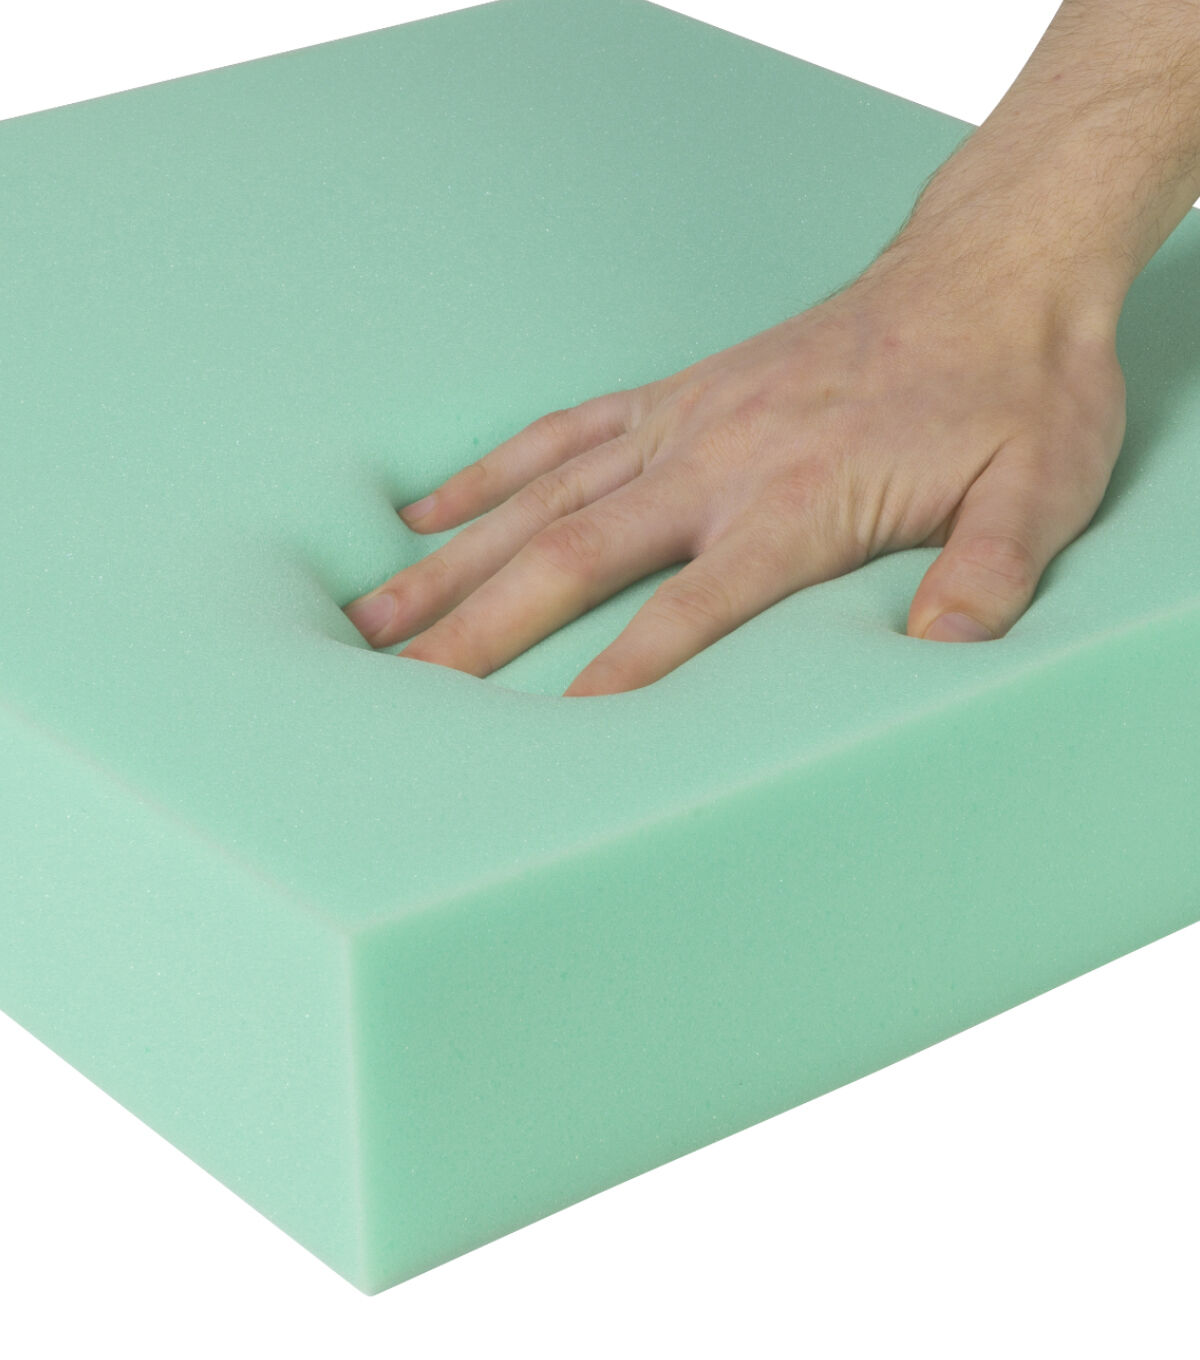 FoamRush 2 Thick x 32 Diameter High Density Upholstery Foam (Bar